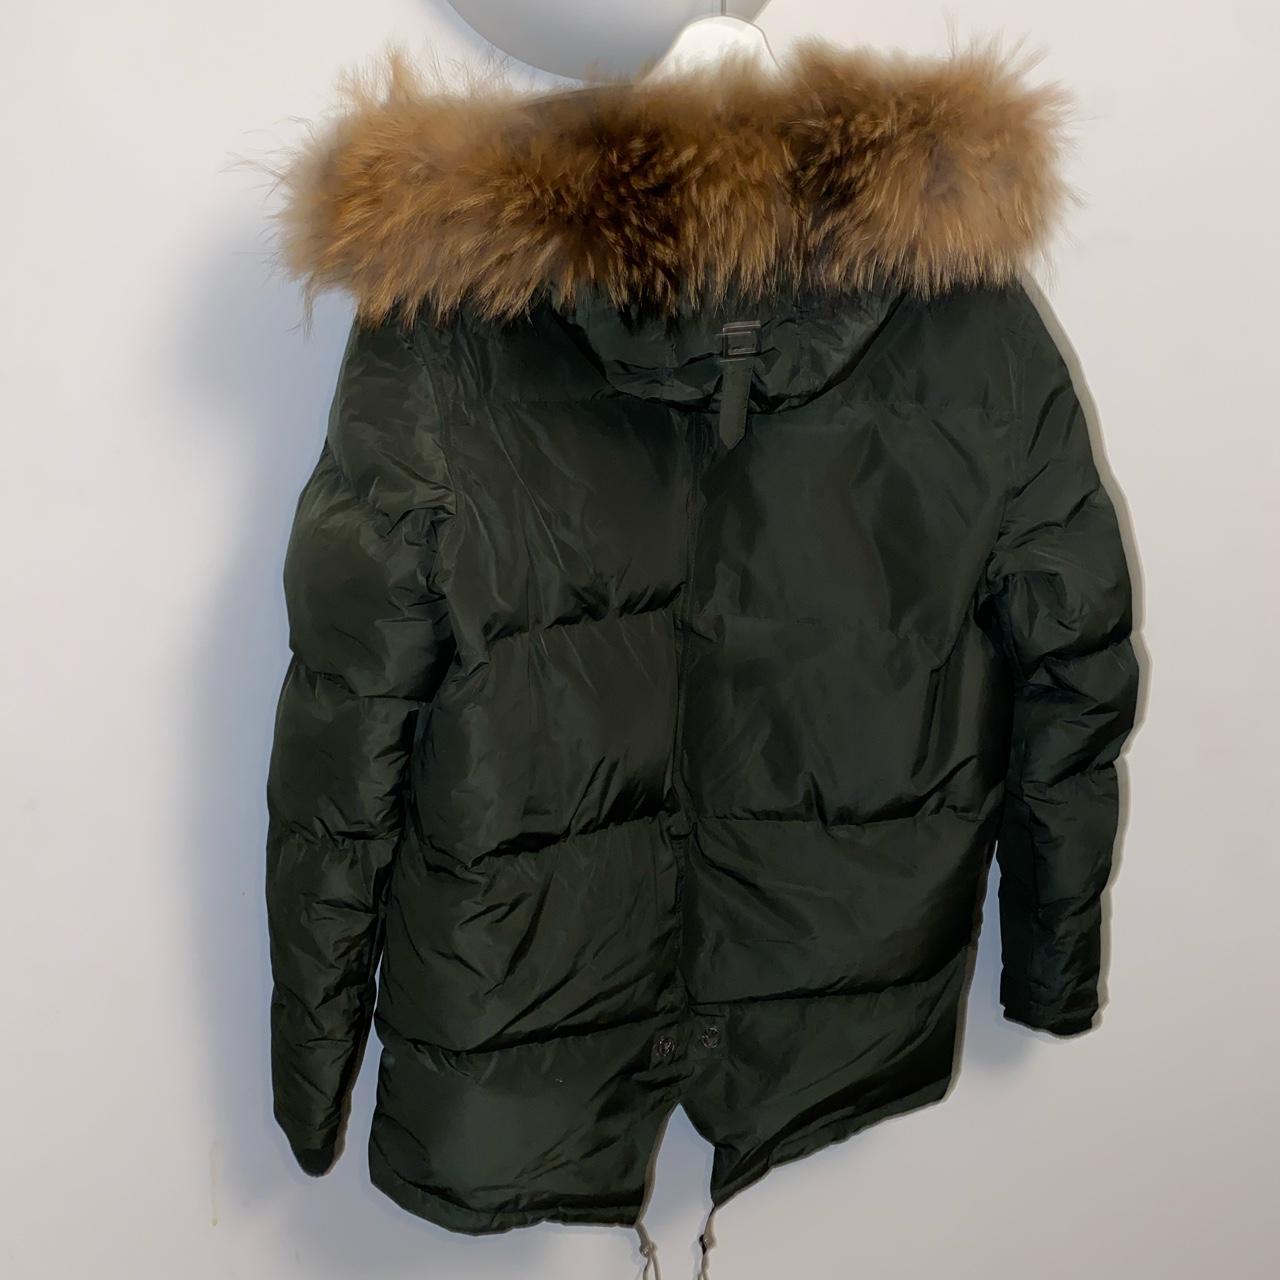 Benjart Real fur parka jacket Worn once Size XL... - Depop